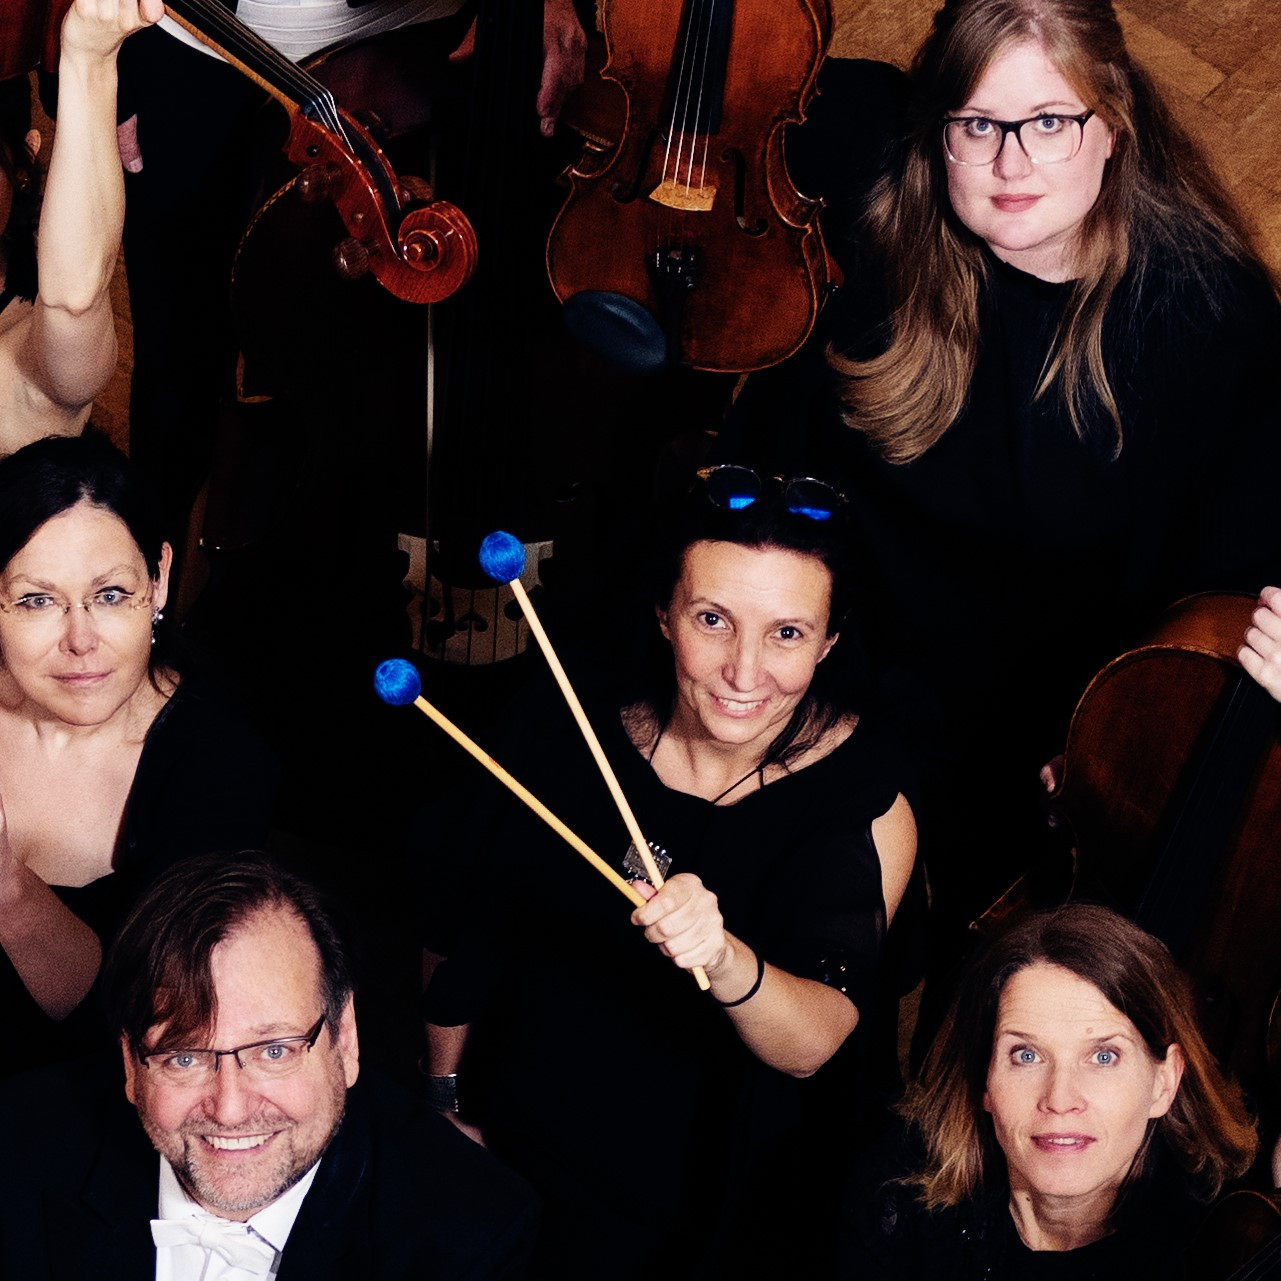 Ausschnitt des Gruppenbilds des Wiener Concert-Vereins mit Fokus auf Mira Weihs